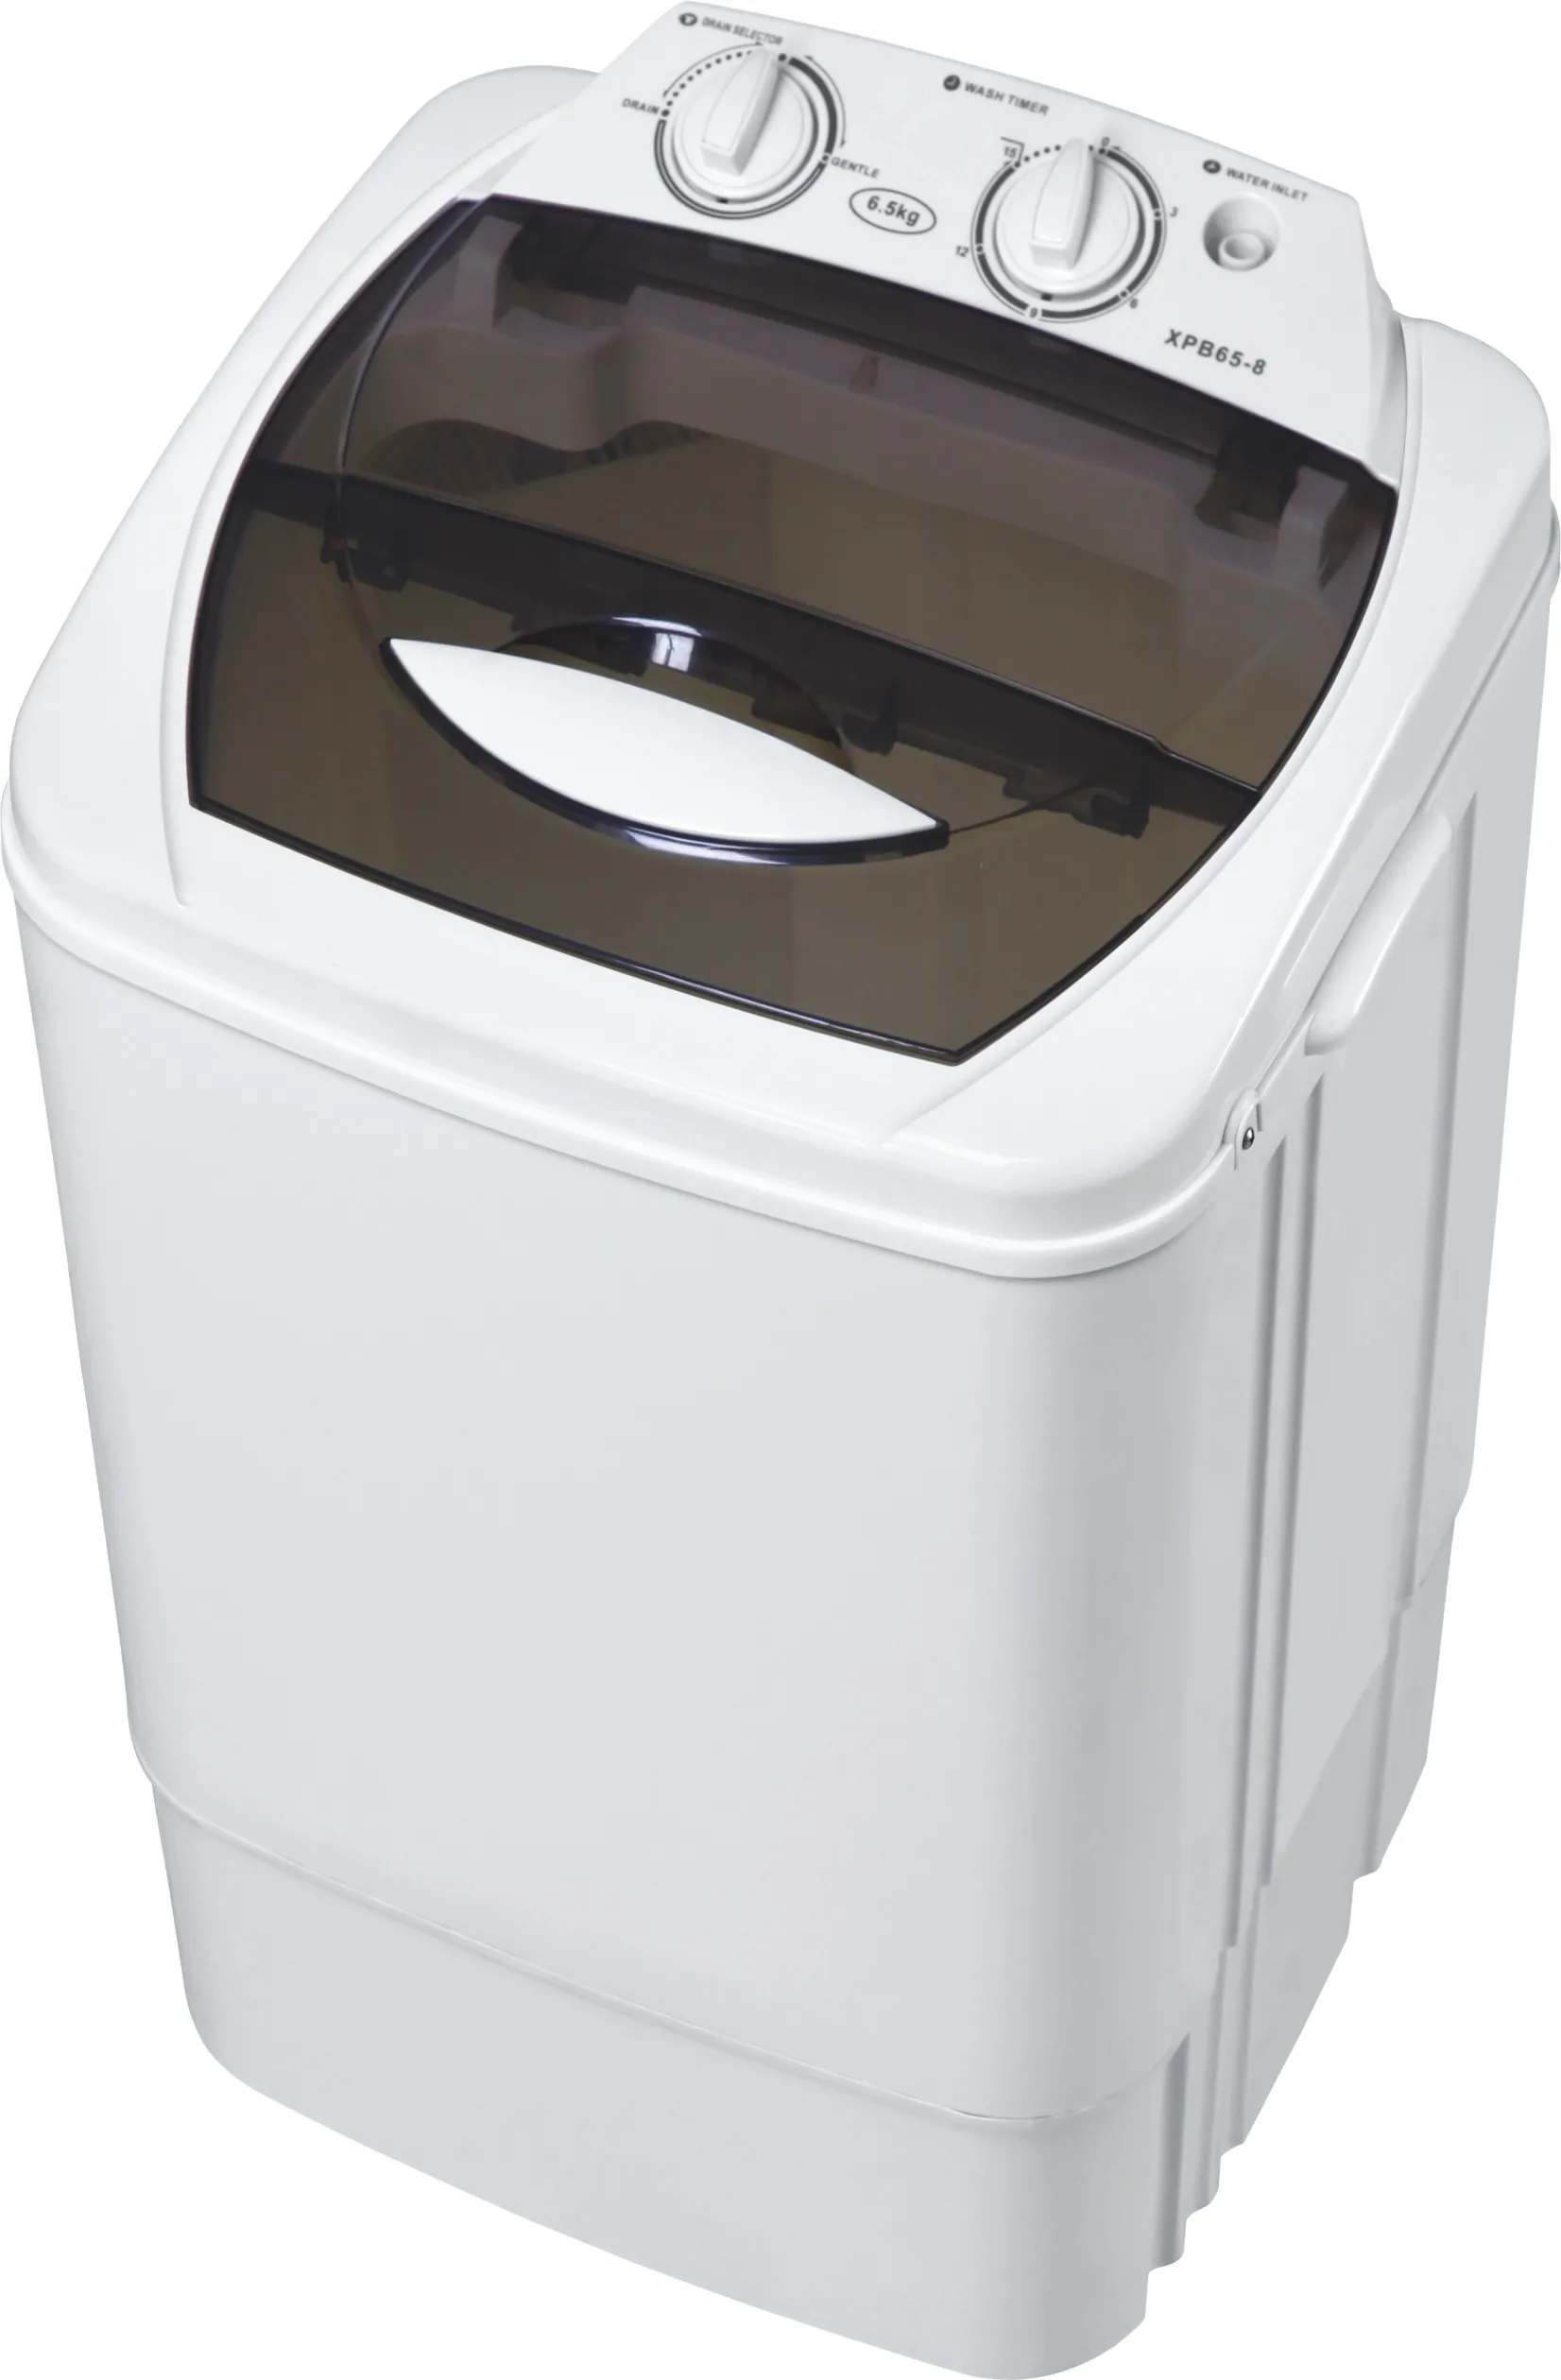 Купить хорошую стиральную машину автомат недорого. Стиральная машина Белоснежка XPB 20-88s. Supermax Semi auto Single Tub washing Machine model no xpb350. Стиральная машинка маленькая переносная.